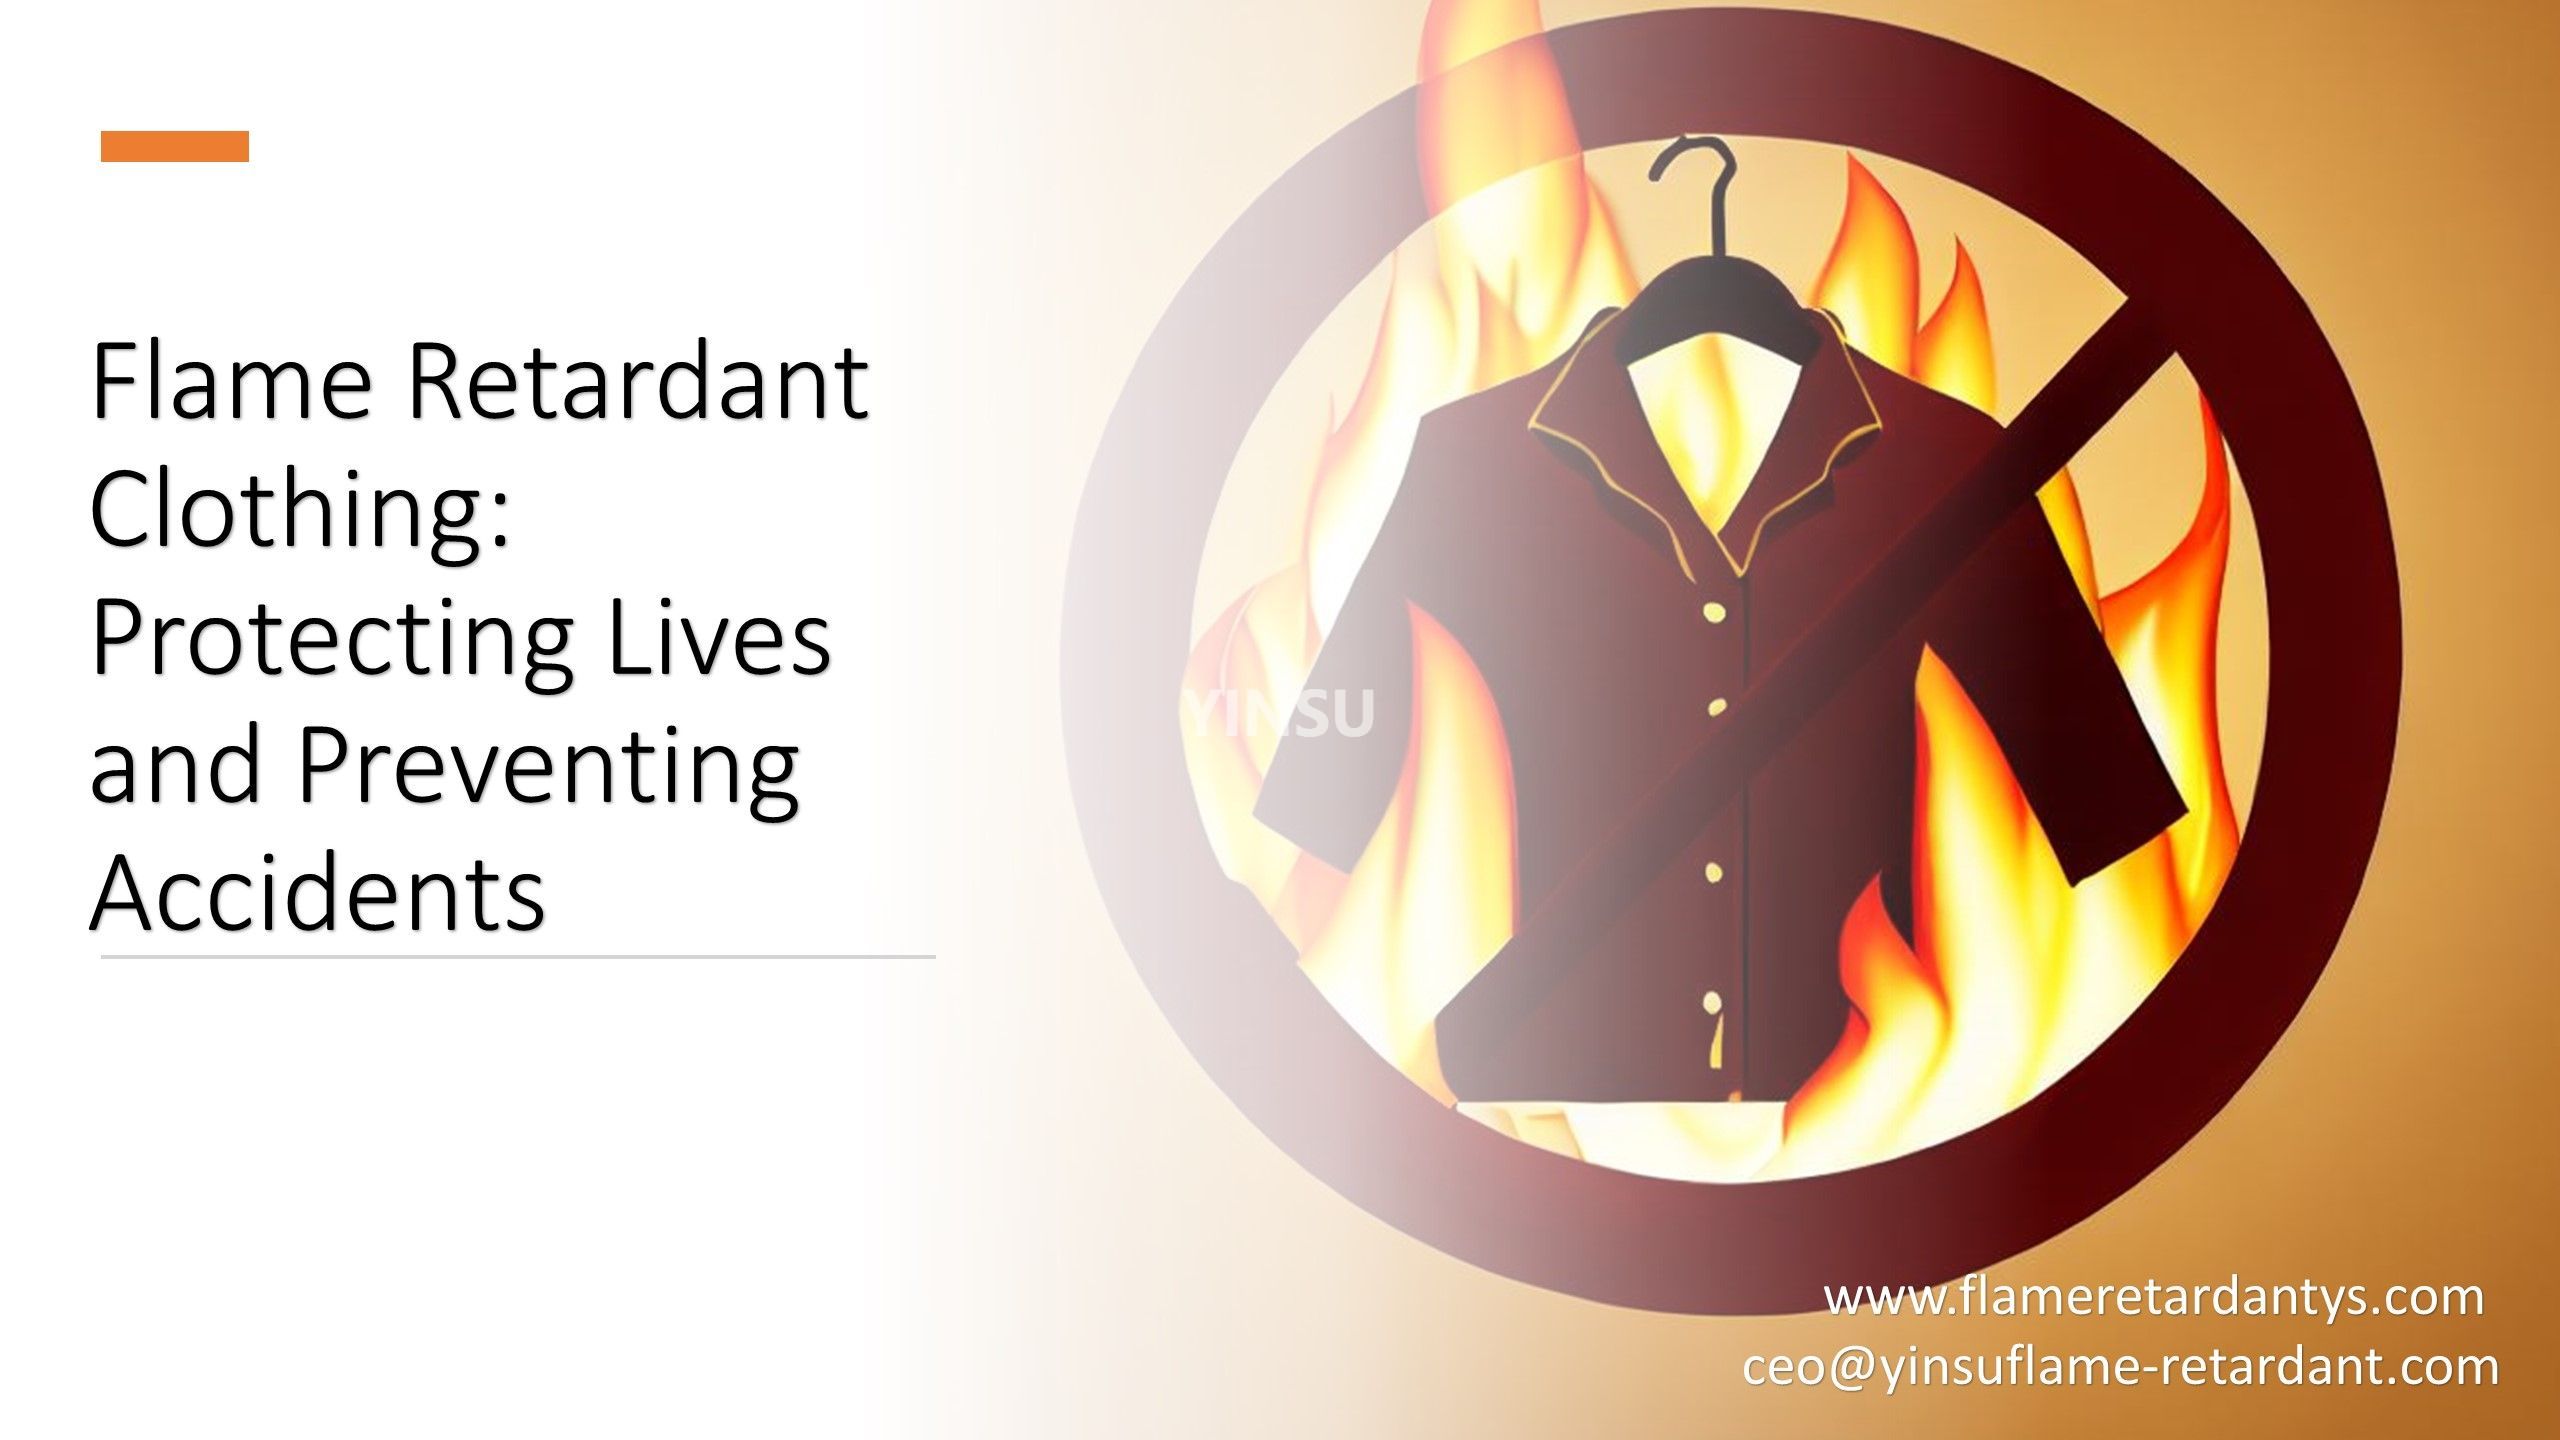 6. Огнестойкая одежда, защищающая жизни и предотвращающая несчастные случаи.